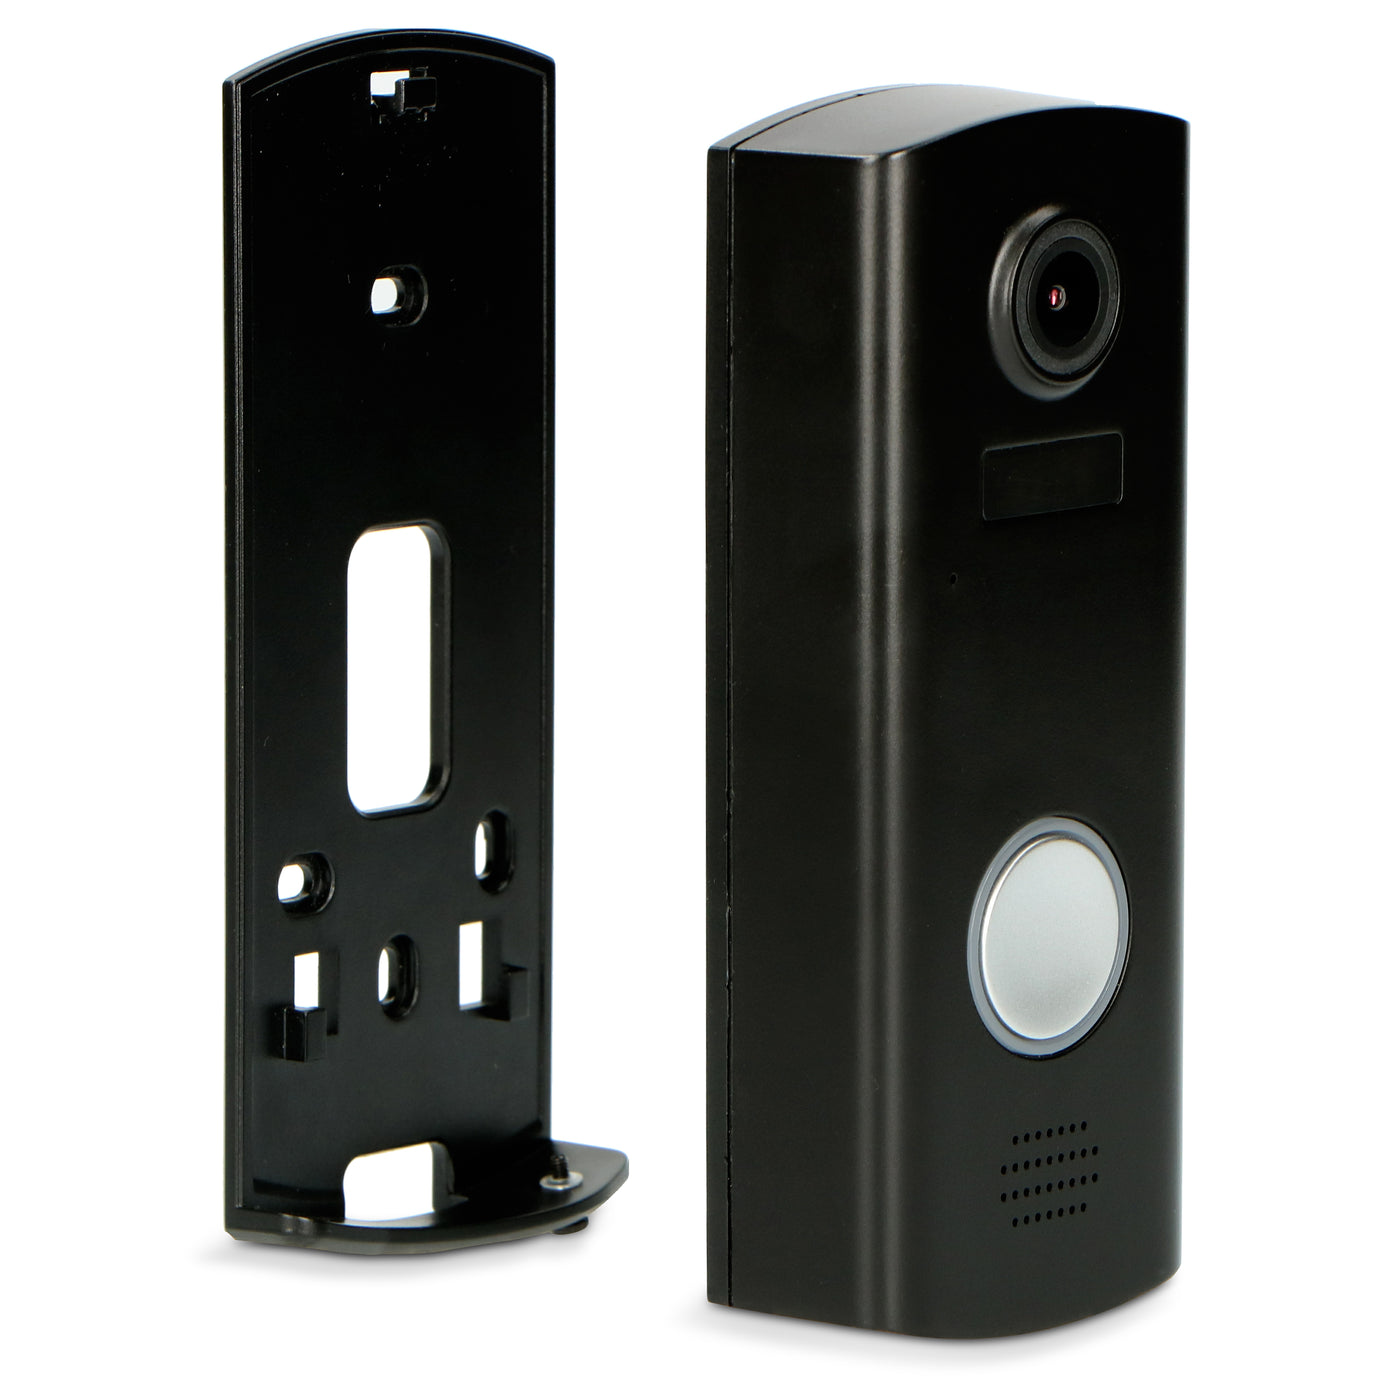 Alecto DVC600IP - Video deurbel met camera en wifi - Zwart